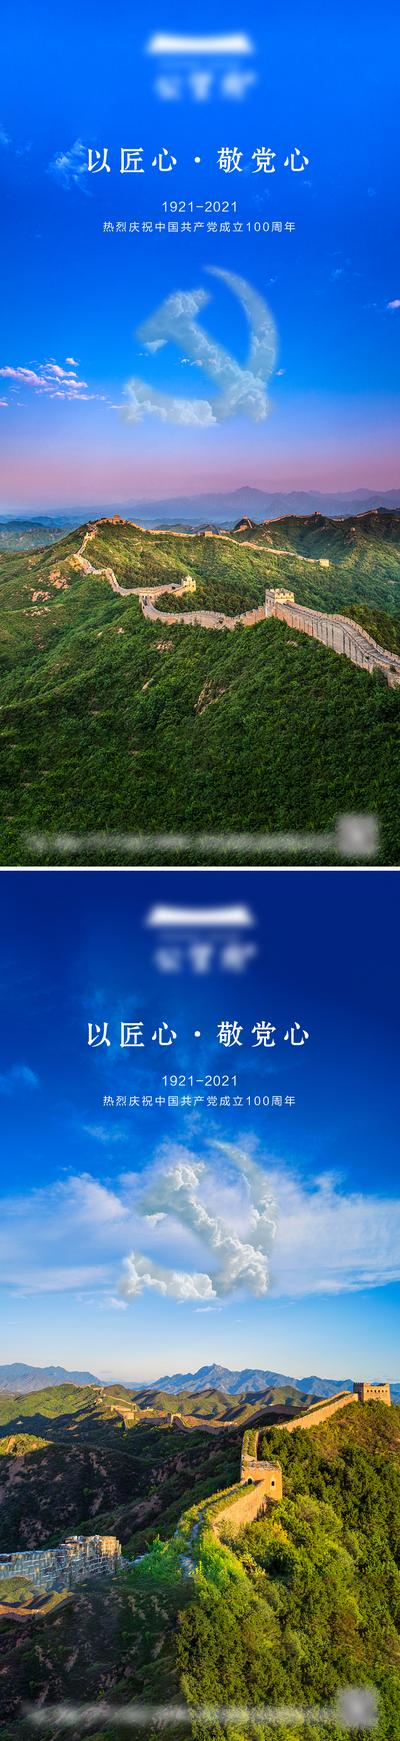 【南门网】海报 地产 公历节日 建党节  党徽   长城